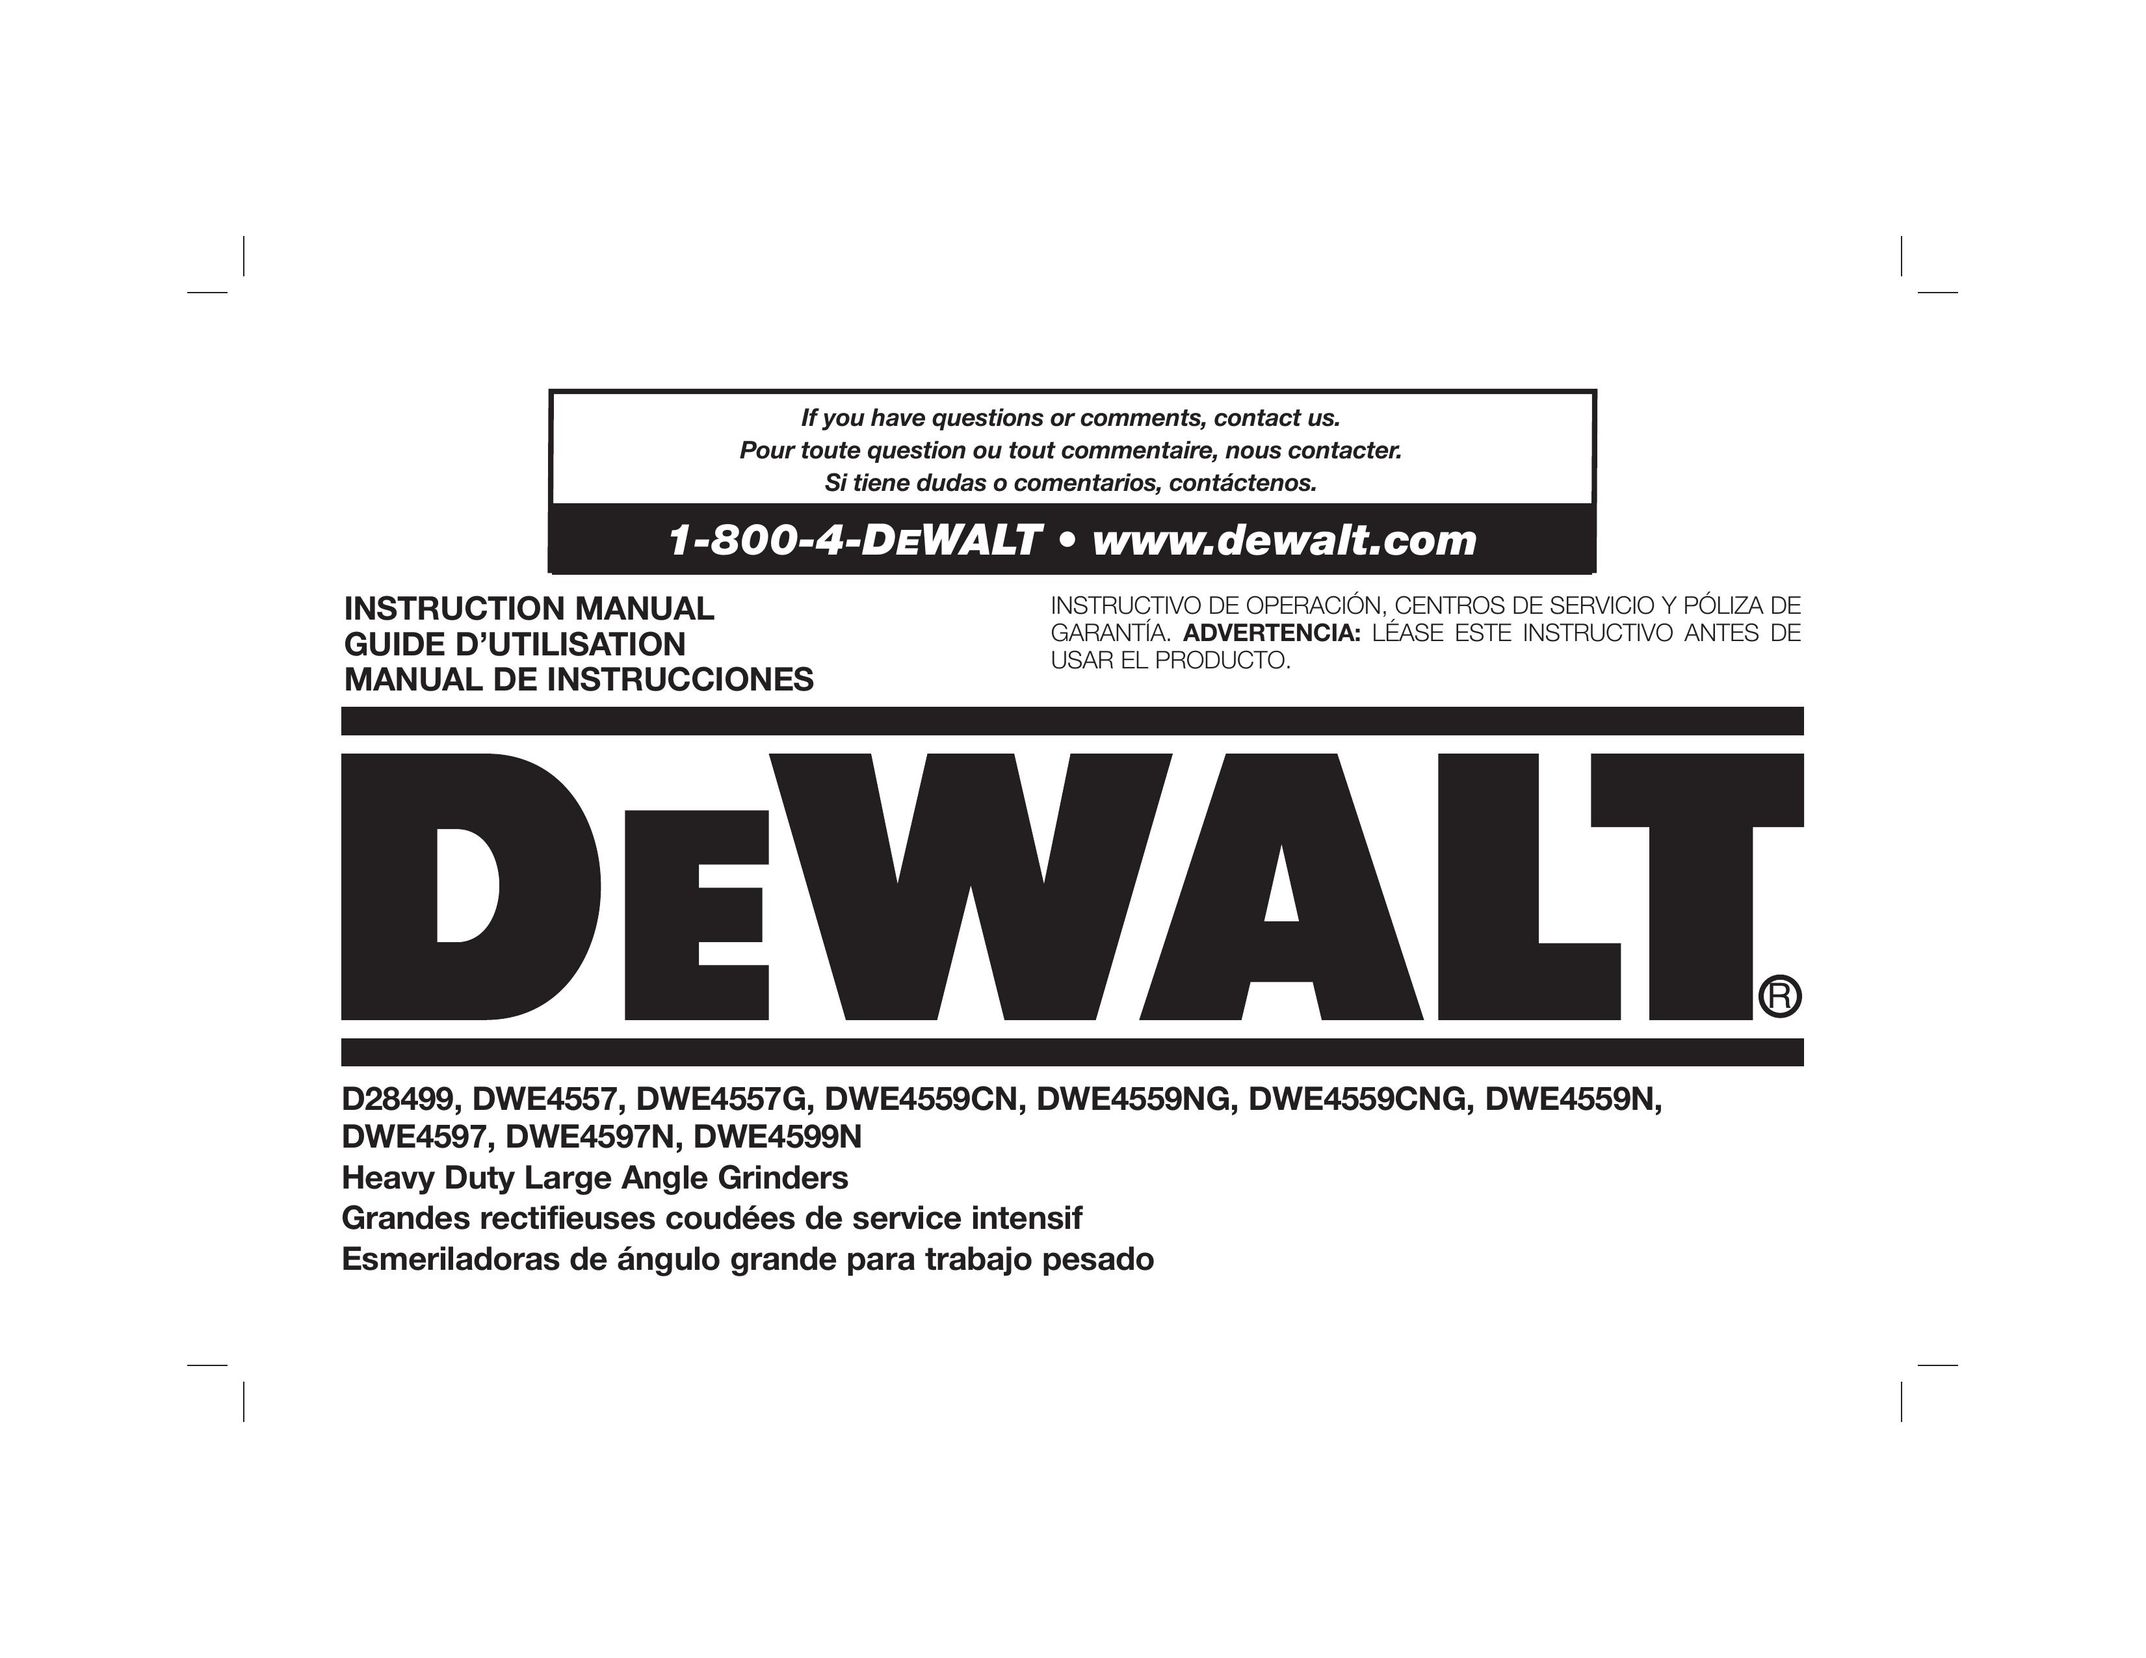 DeWalt DWE4559N Grinder User Manual